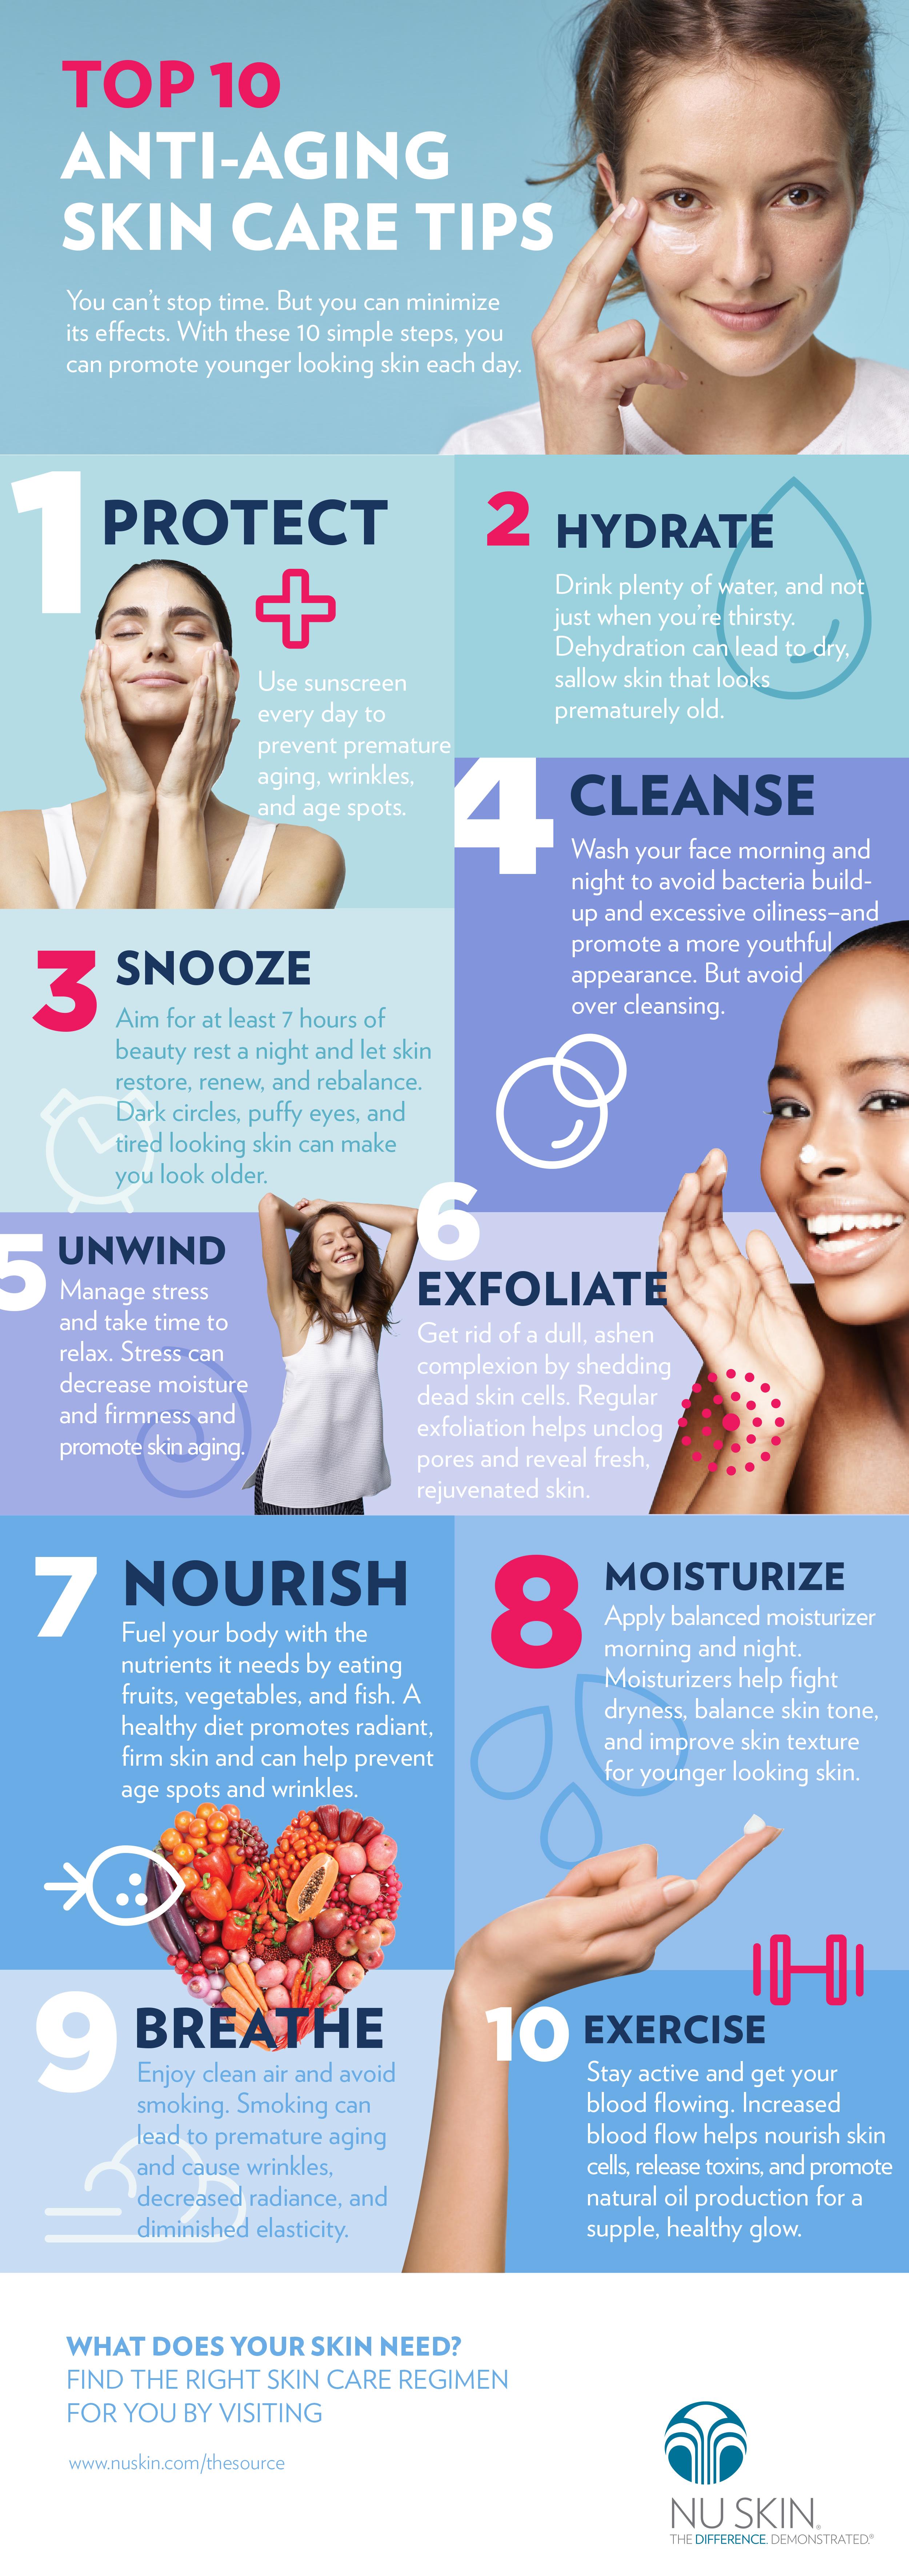 Anti-aging skin care tips